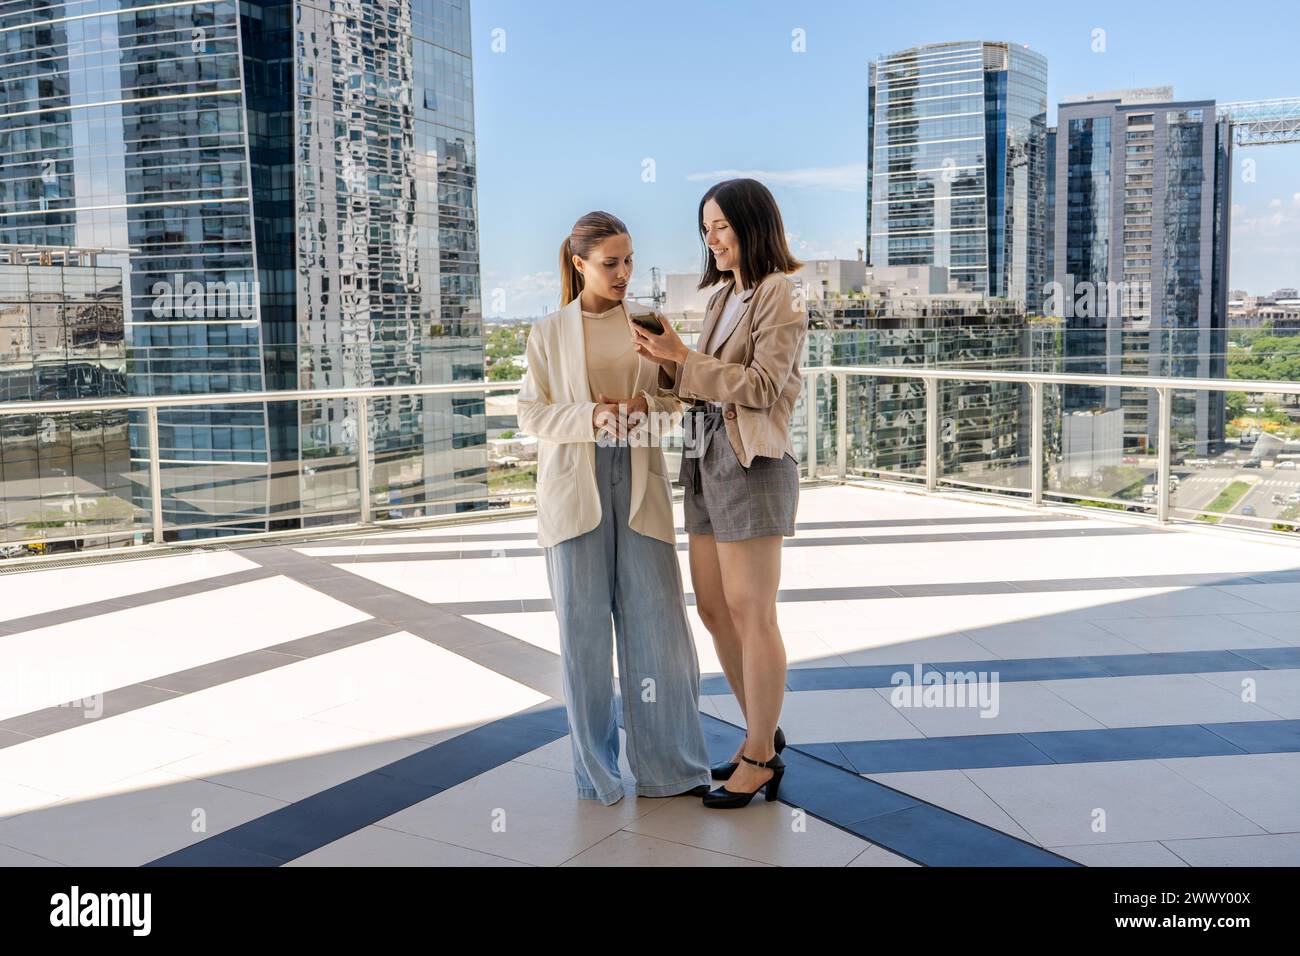 Deux femmes d'affaires debout sur une terrasse, l'une d'elles tenant un téléphone portable et montrant un courriel à sa collègue. La scène se déroule dans une ville avec grand Banque D'Images